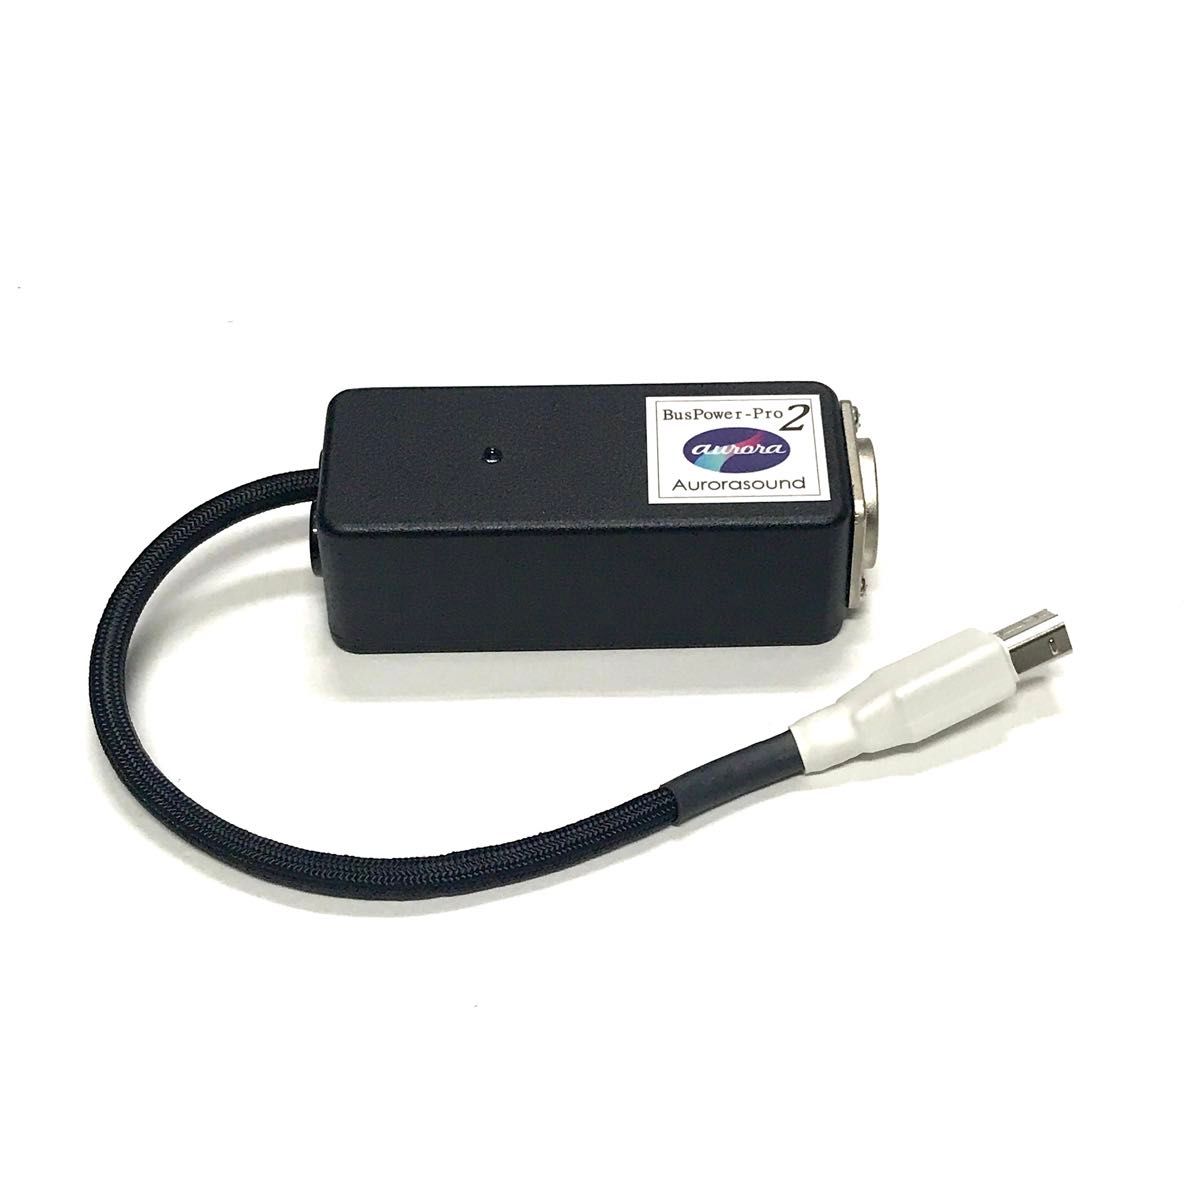 Aurorasound BUSPOWER-PRO2 USBバスパワー オーディオ クリーン電源 ノイズ対策 オーロラサウンド 